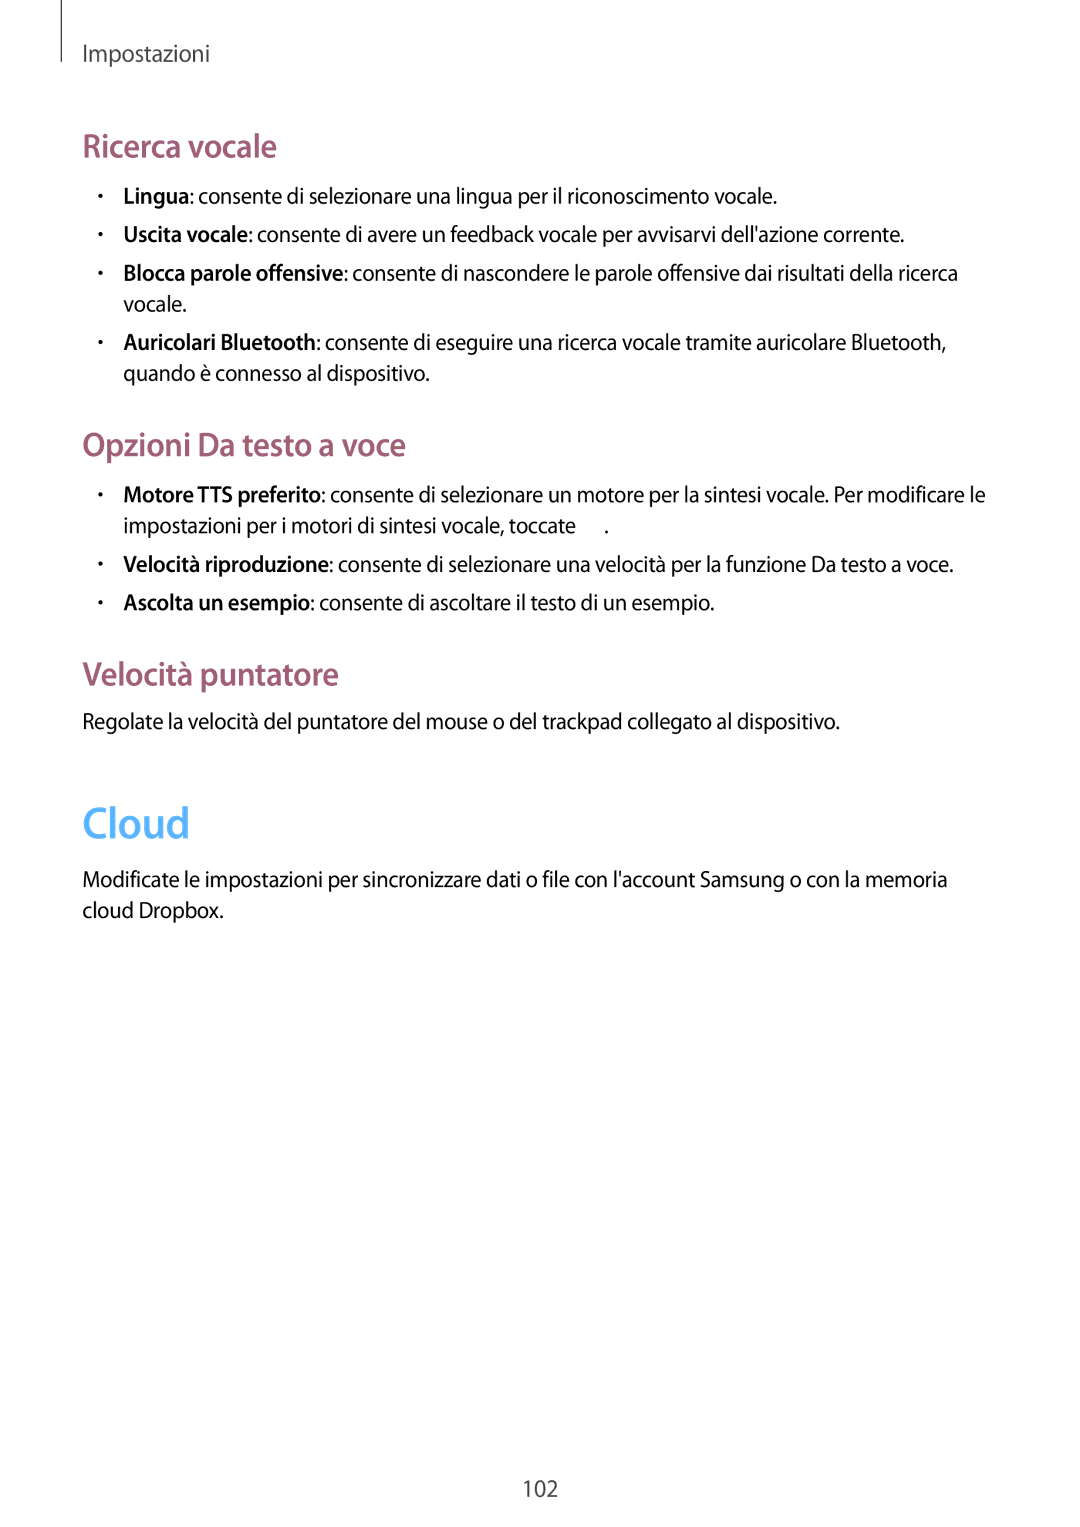 Samsung GT-P5220ZWATIM manual Cloud, Ricerca vocale, Opzioni Da testo a voce, Velocità puntatore 